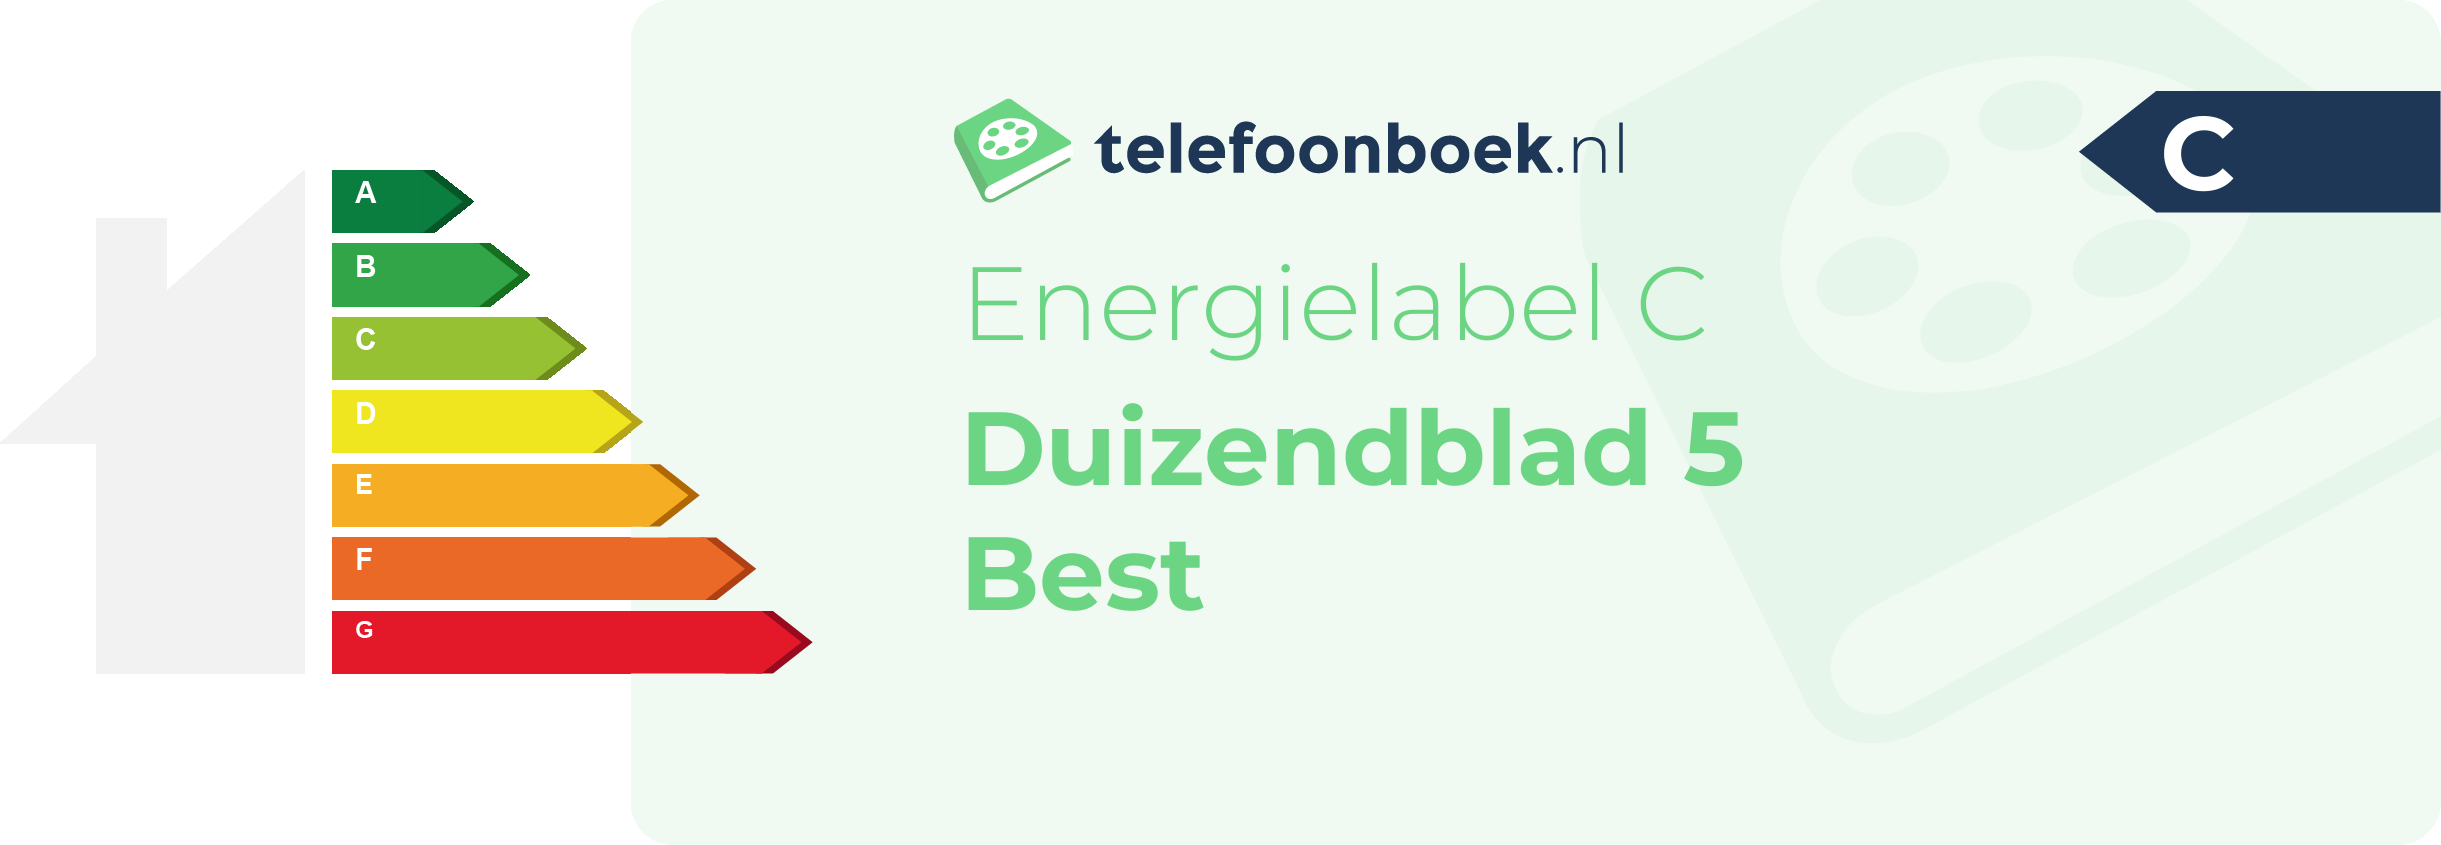 Energielabel Duizendblad 5 Best